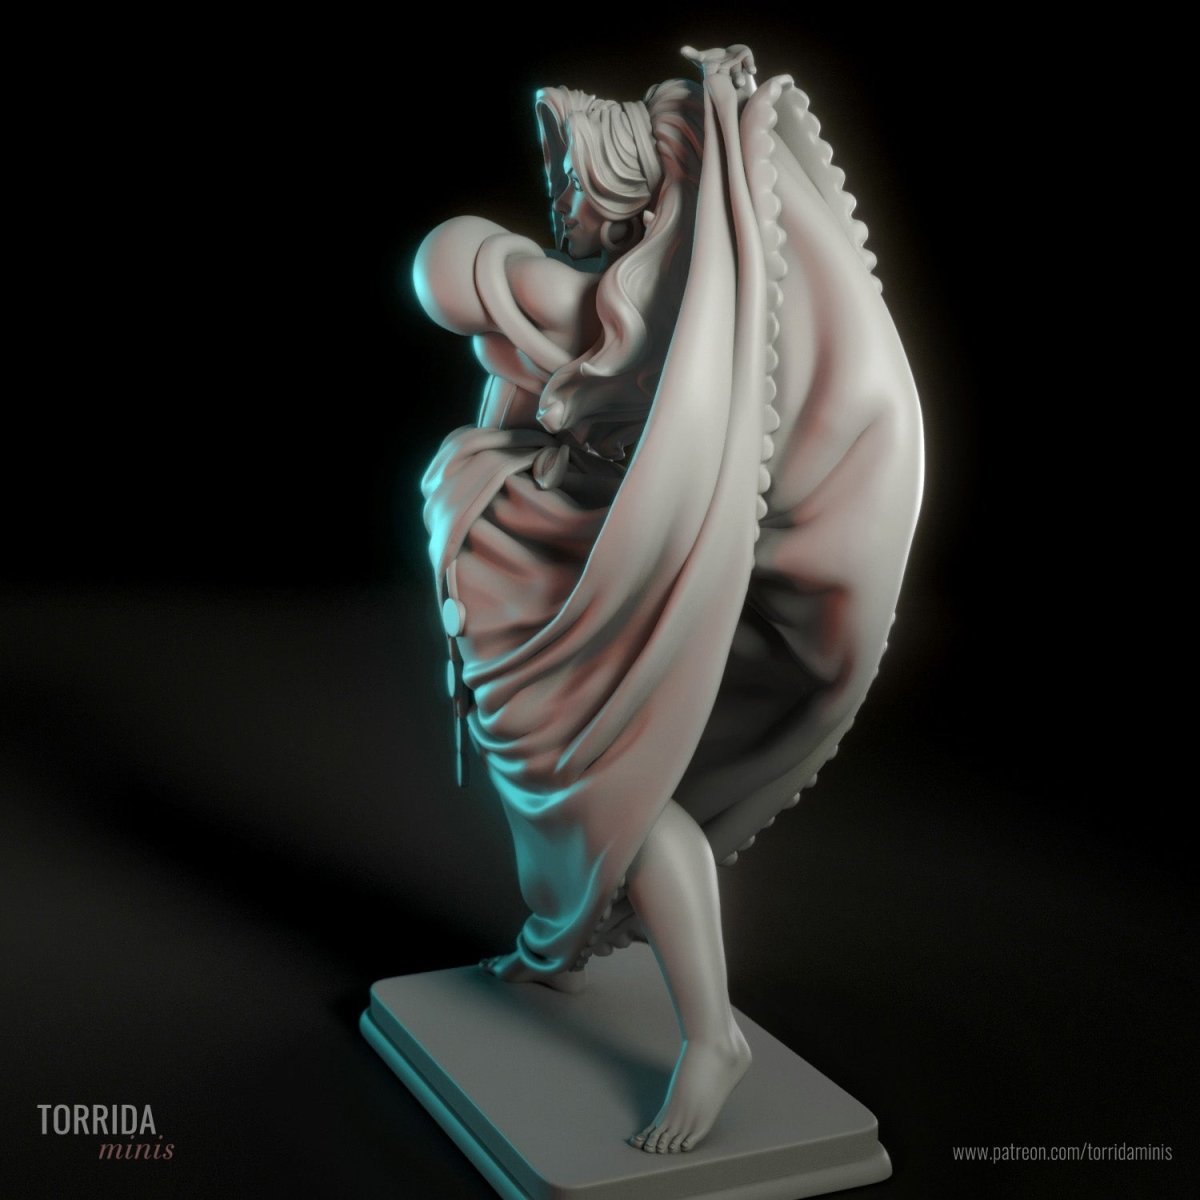 Esmeralda 3d Printed Resin Figurine, Resin printed miniature by Torrida